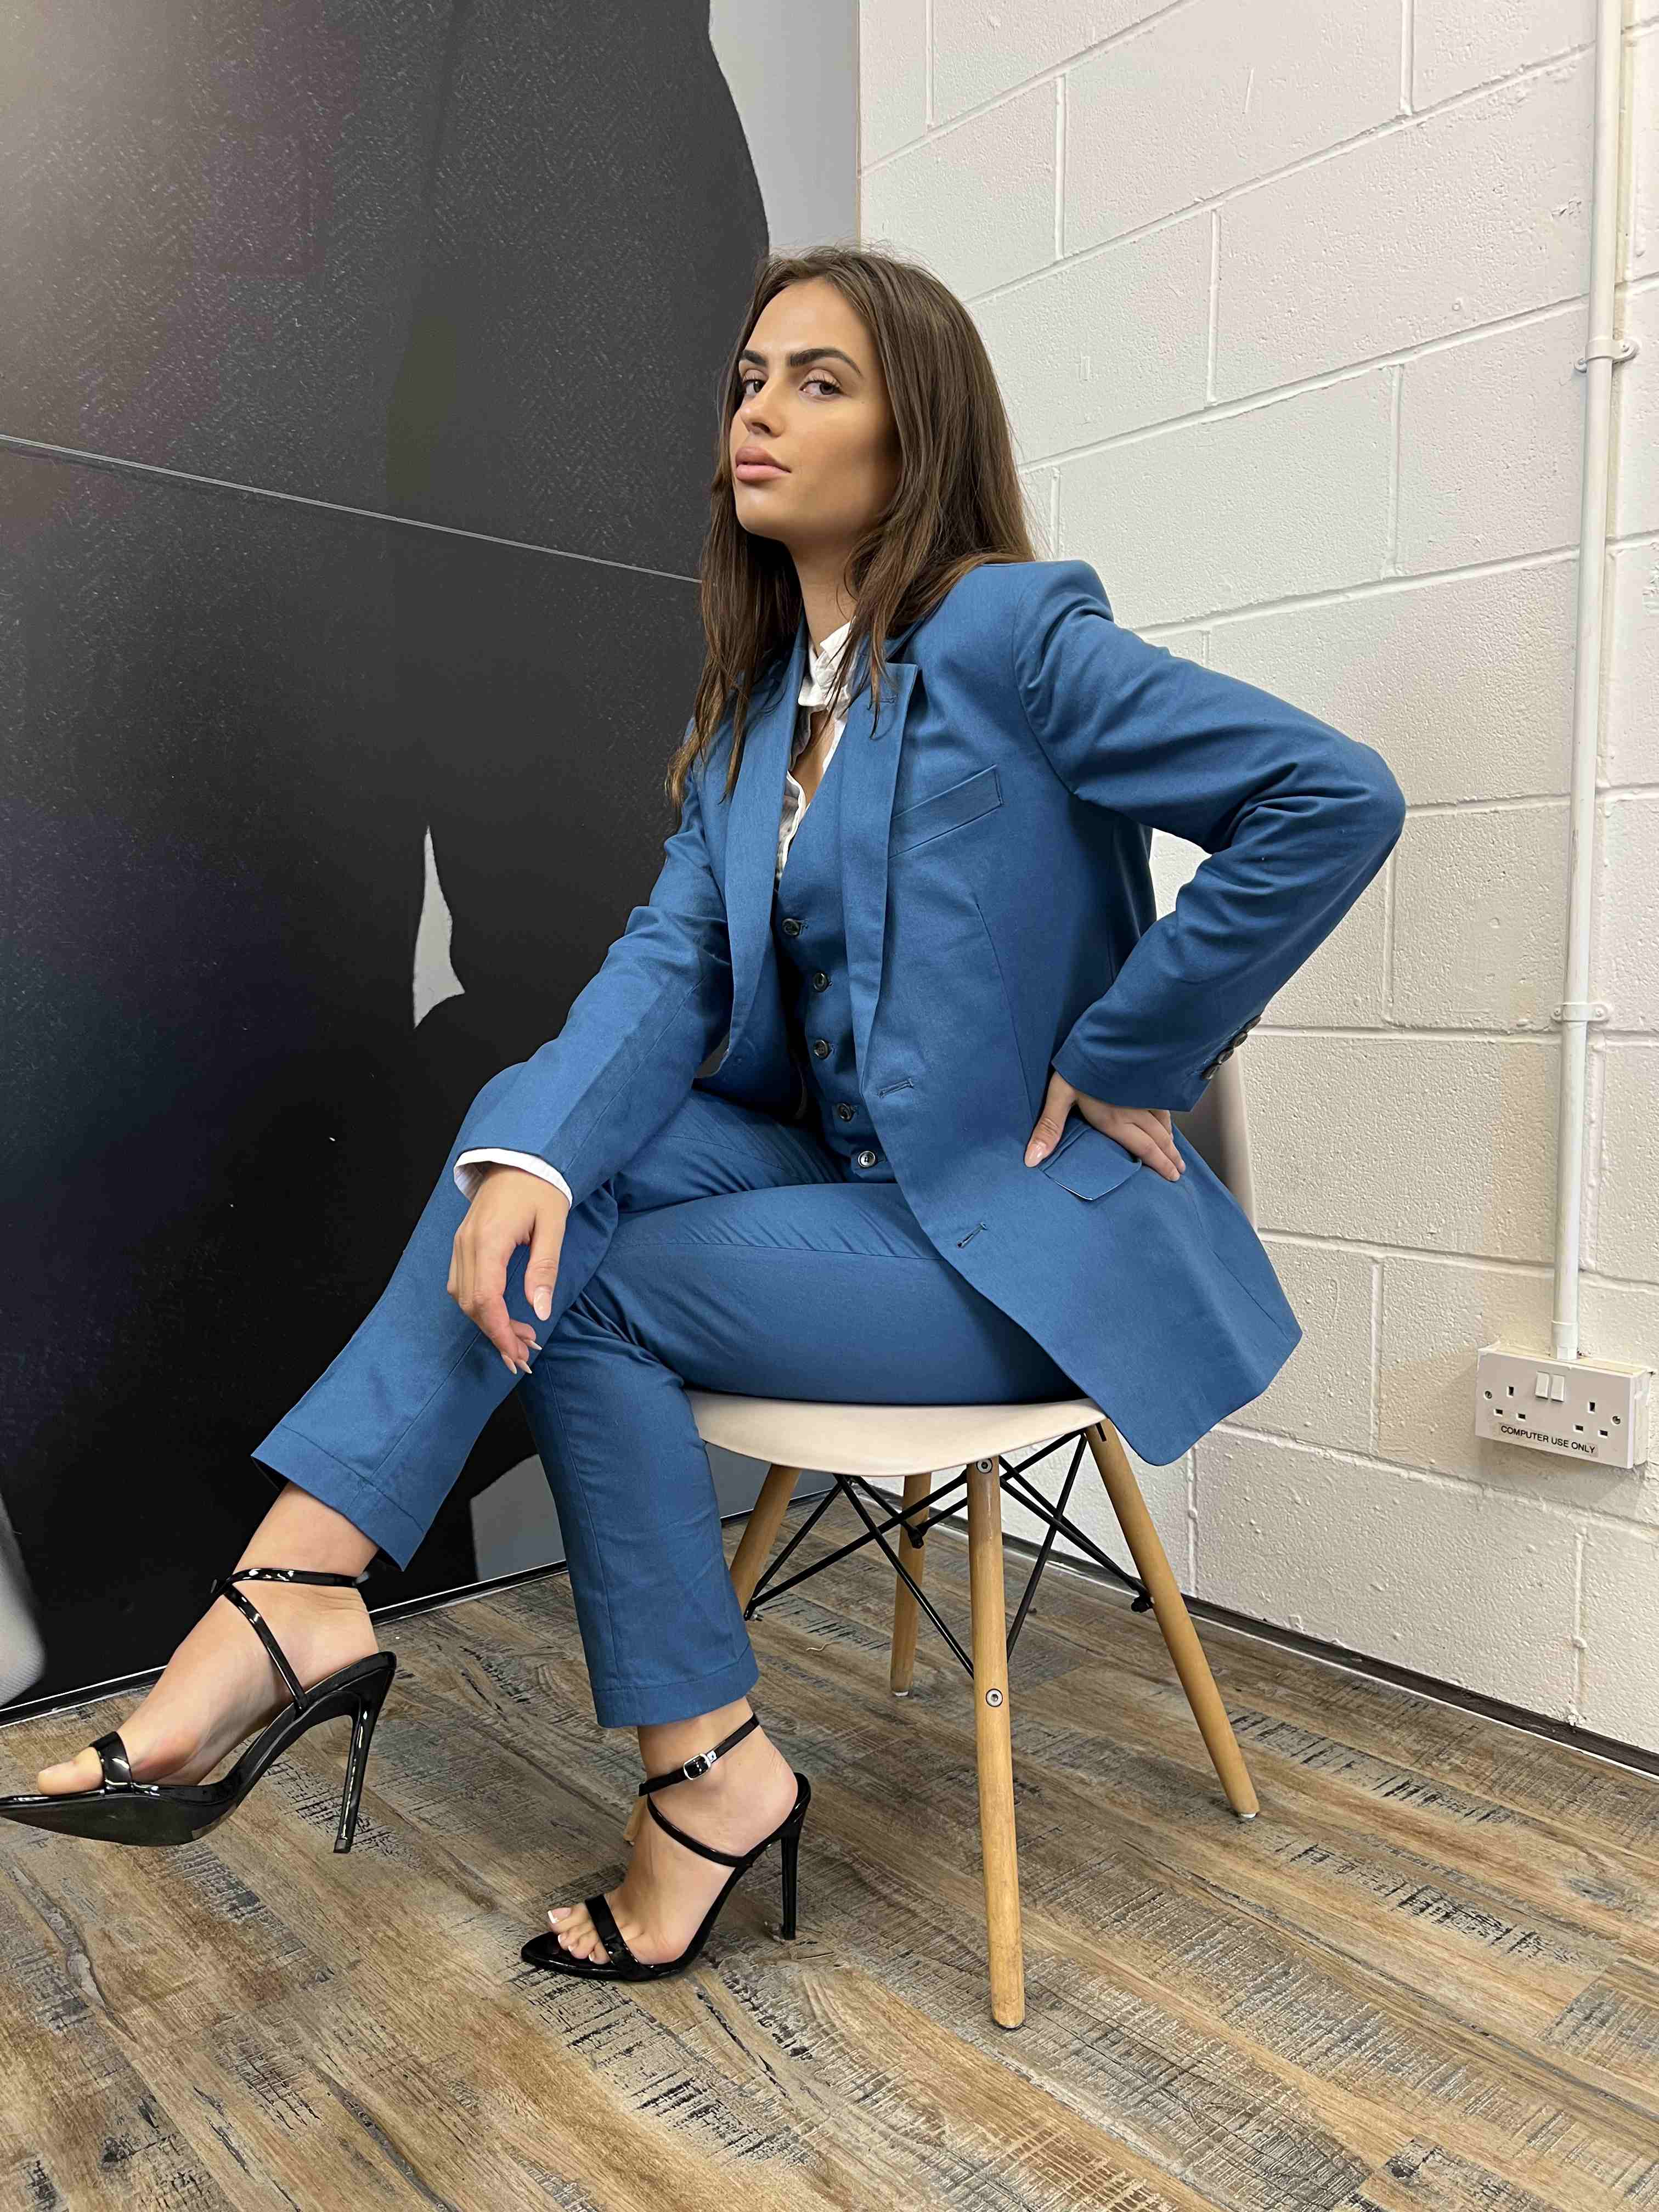 Ronikash Women Business Suit Casual Two Piece Set Corset Suit Coat